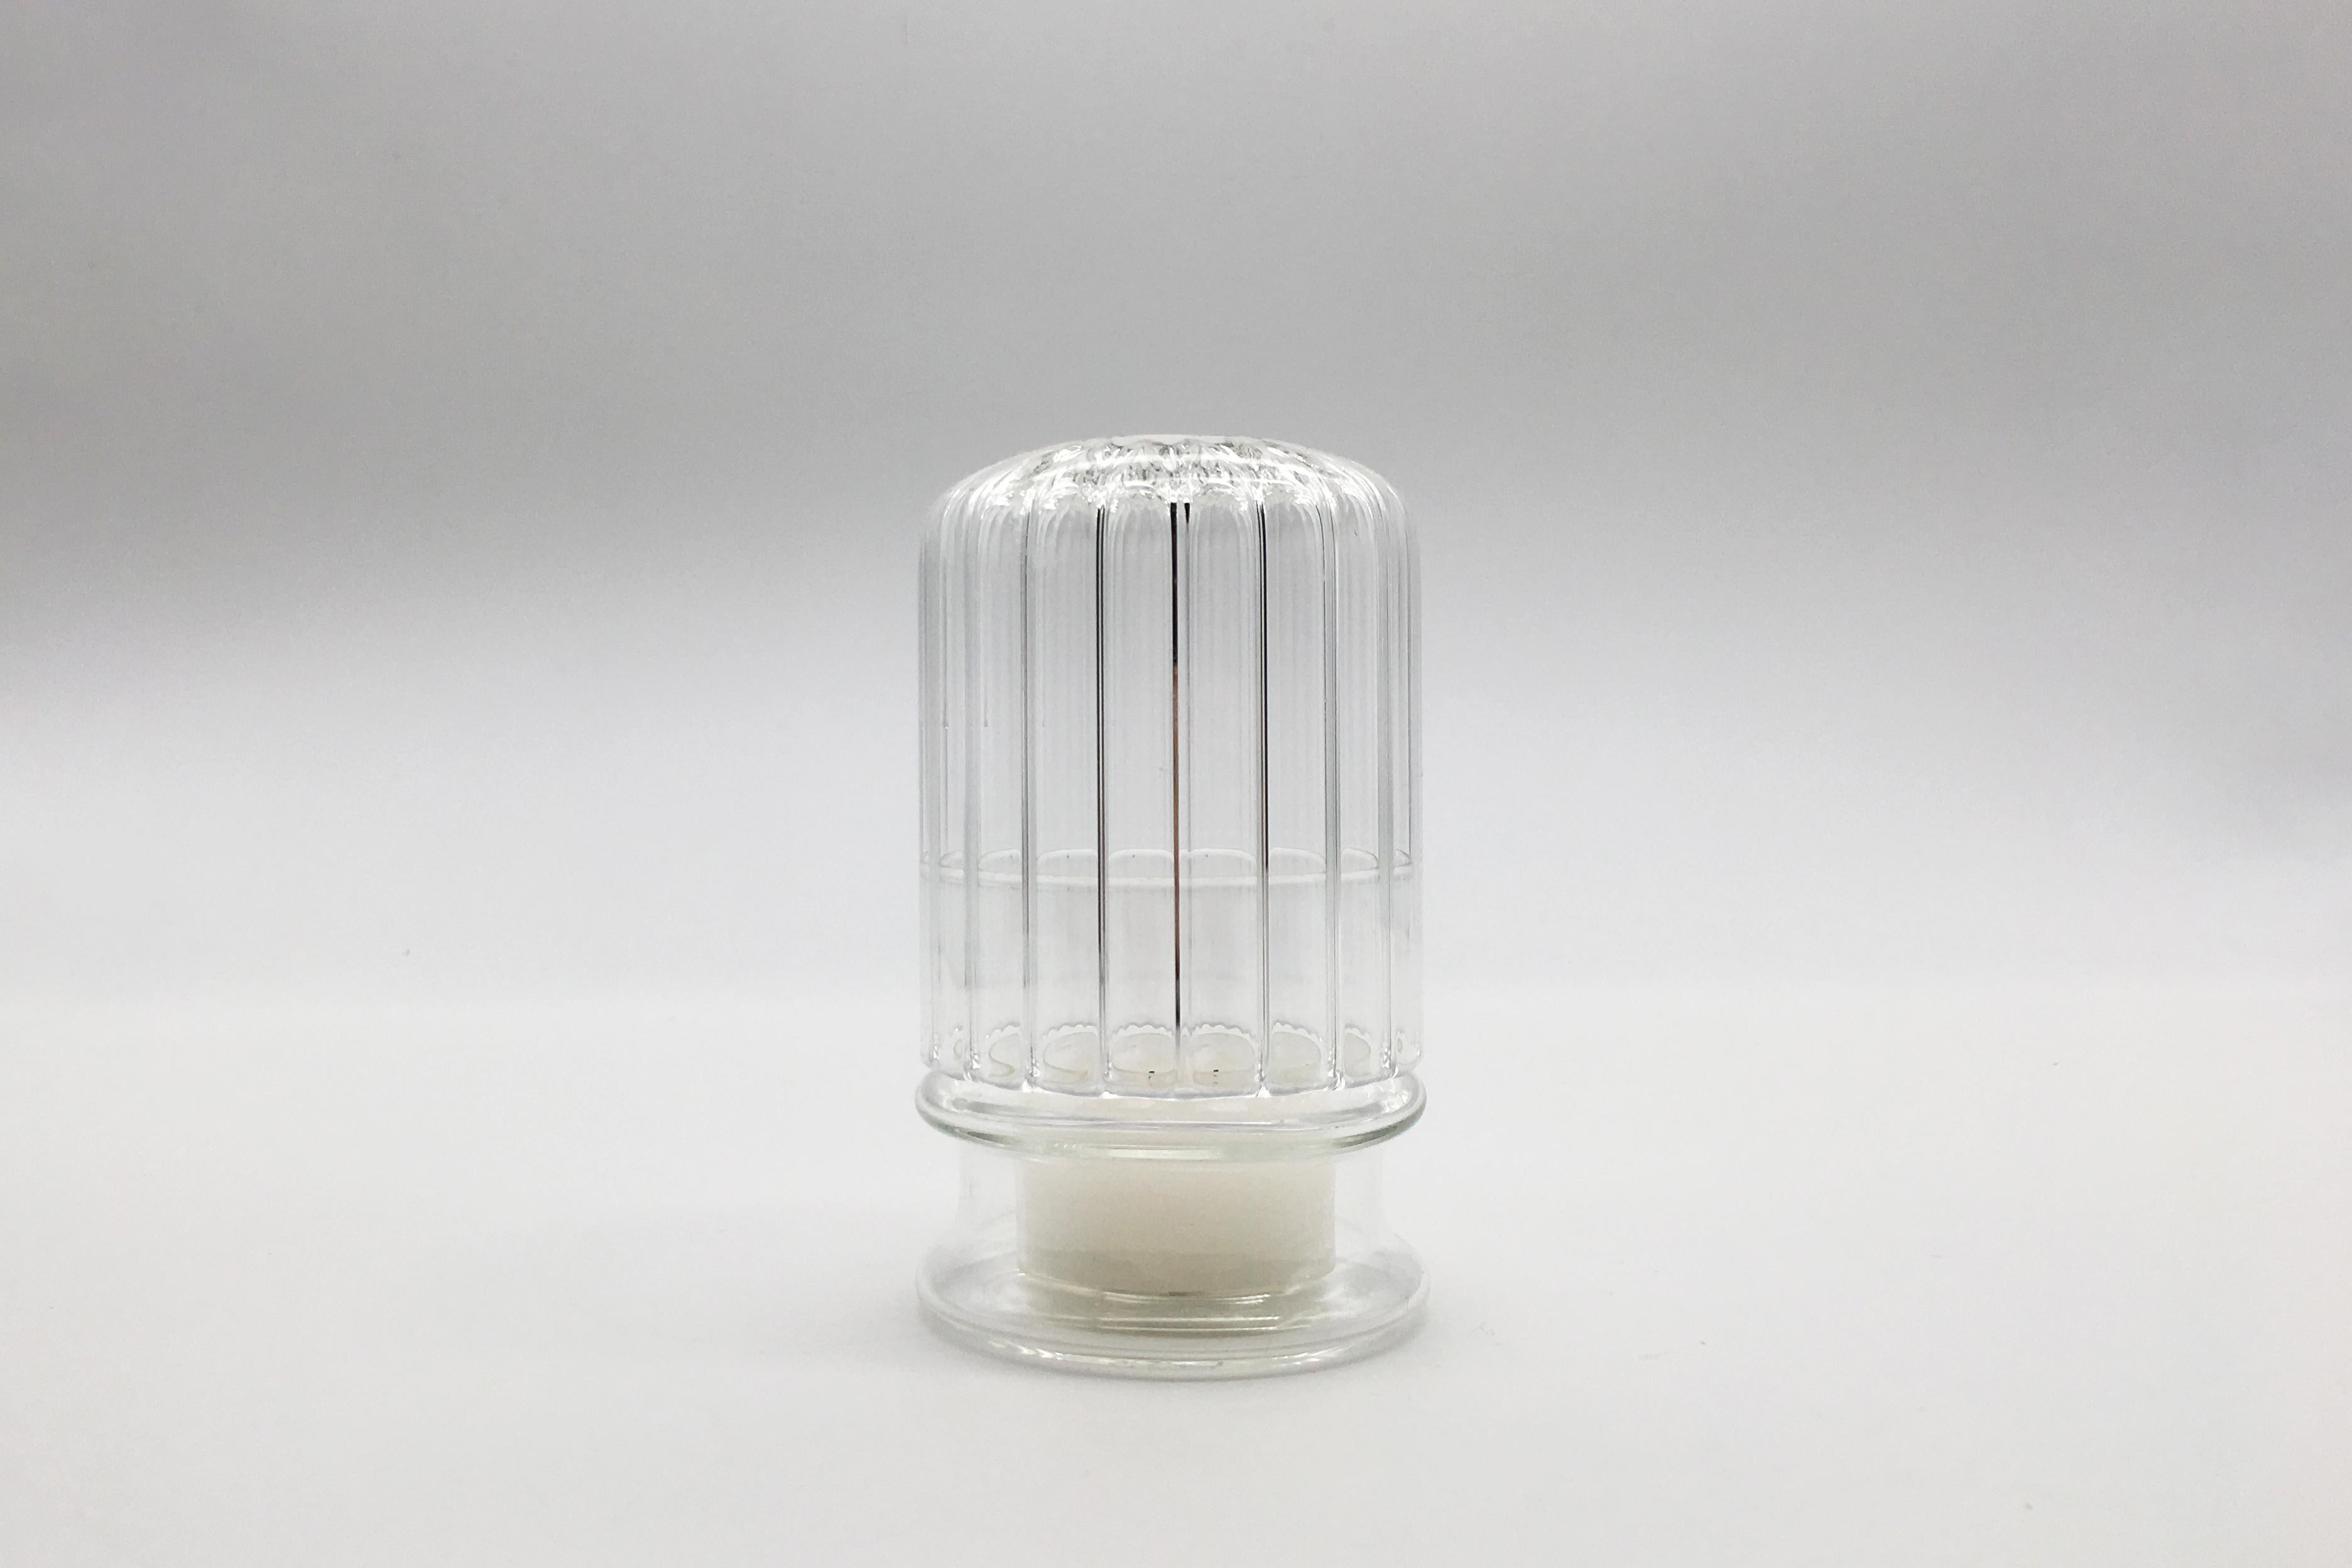 Moscardino ist ein eleganter, handgefertigter Kerzenhalter aus Borosilikatglas. Die Struktur dieses dekorativen Elements sieht aus wie eine Kuppel, die eine kleine Kerze schützt und beherbergt. Das schwache Licht des Kerzenfeuers schafft eine